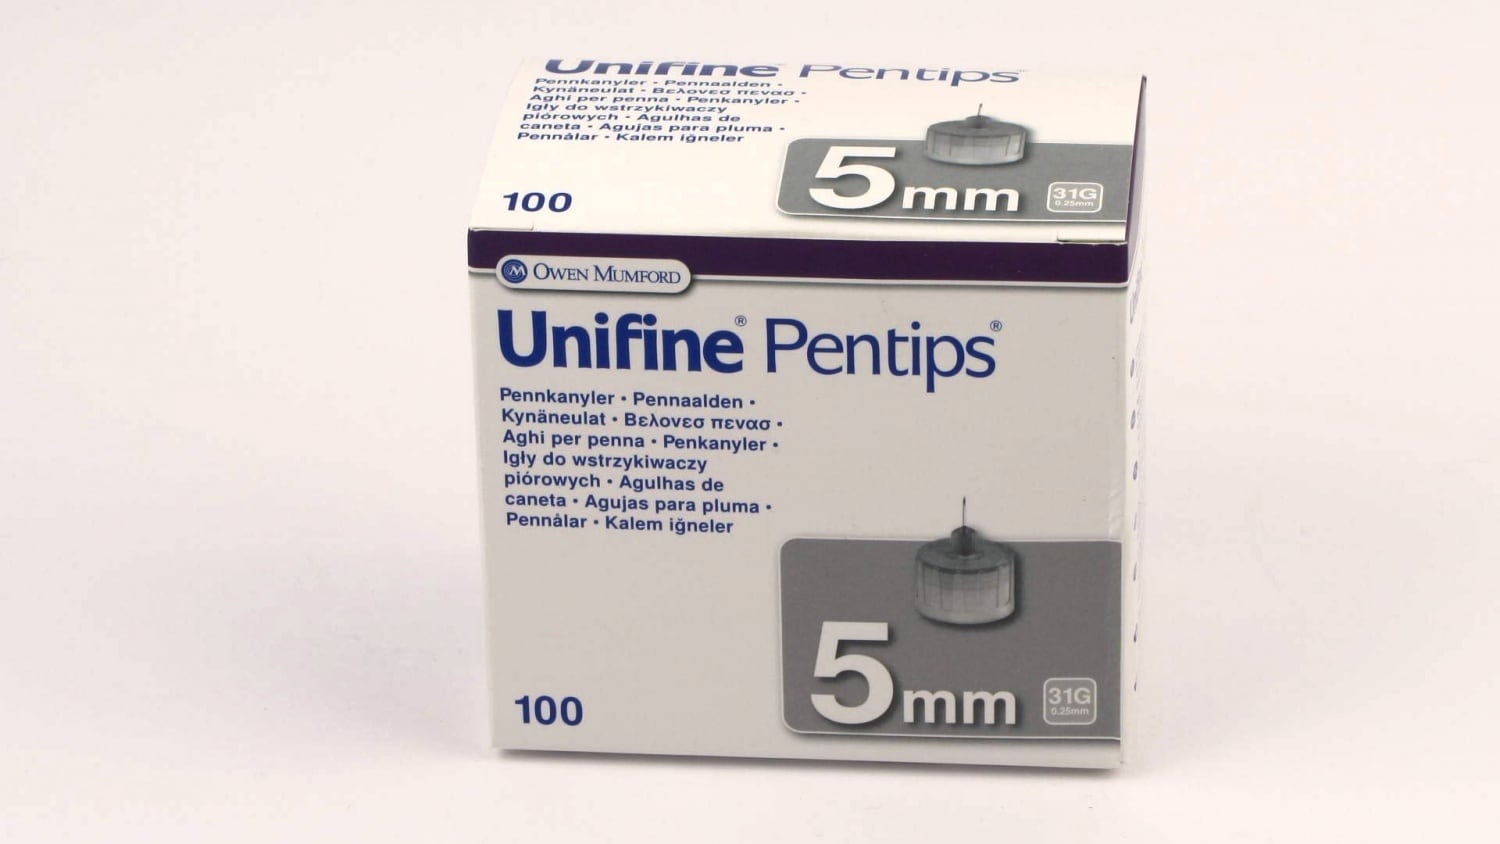 Unifine Pentips 5 mm